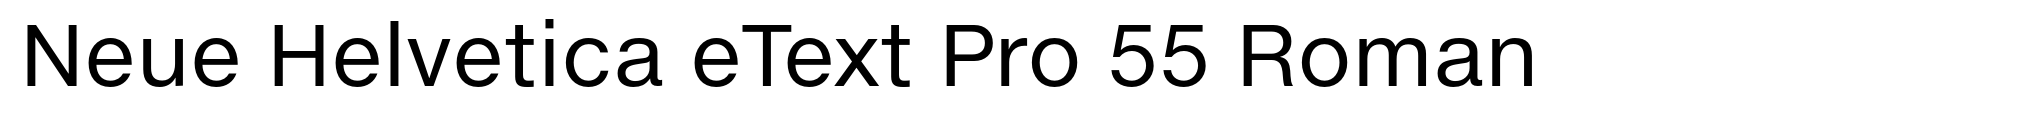 Neue Helvetica eText Pro 55 Roman image